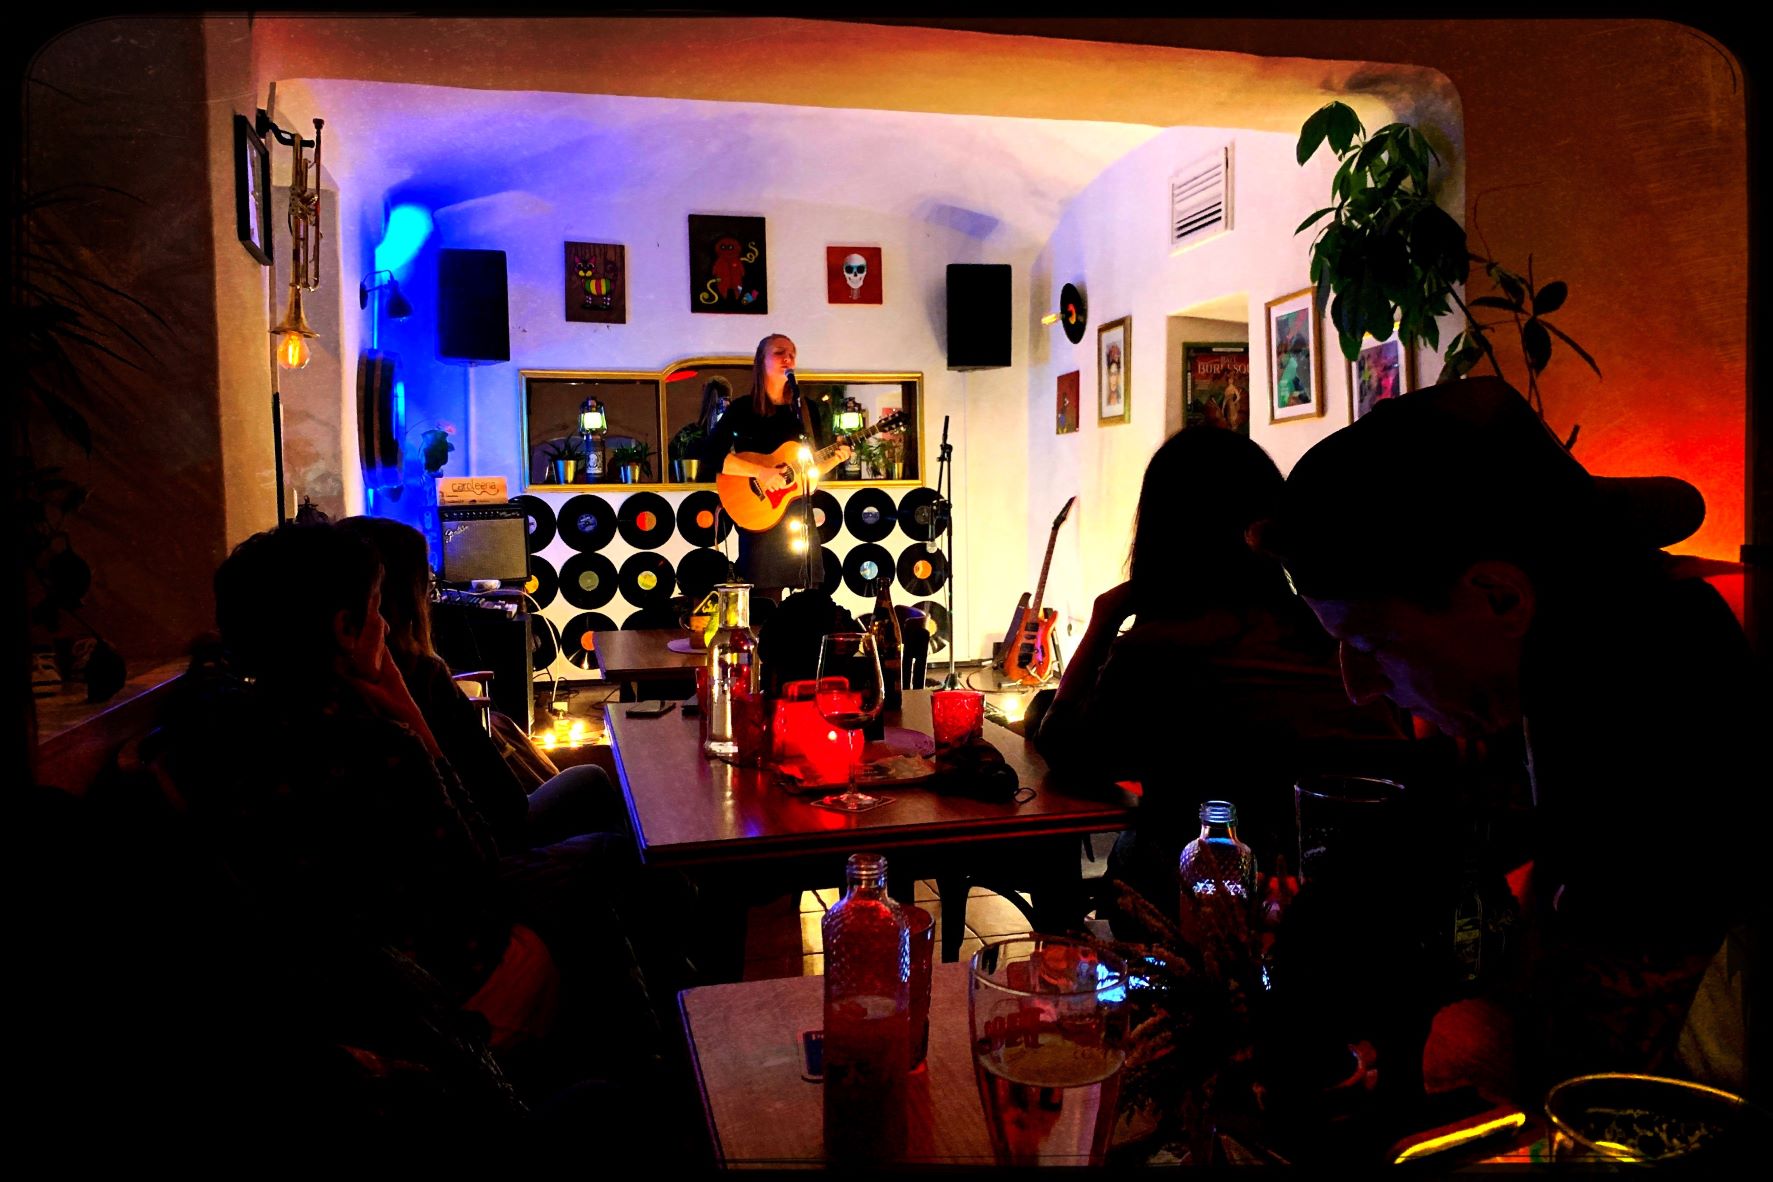 Eine junge Musikerin mit Akustikgitarre steht auf der kleinen Bühne im Wohnzimmer und singt ins Mikrofon, während das Publikum ihr lauscht